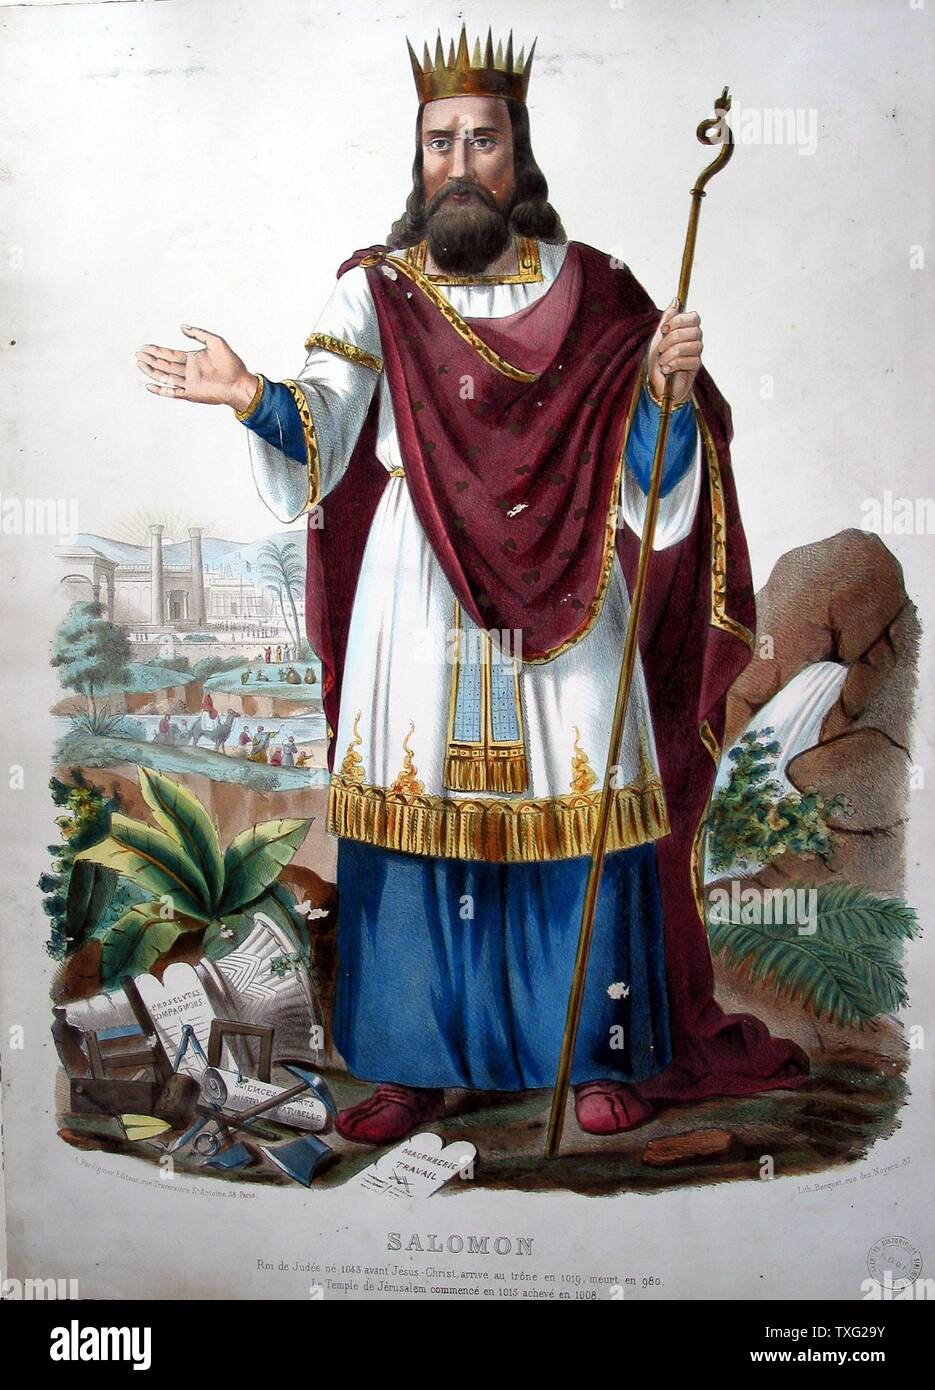 El rey Salomón, grabador: Becquet, Impresora: Agricol Perdiguier, París  alrededor de 1825/1830 litografía en color (65 cm x 50 cm) El rey Salomón  es uno de los tres grandes figuras de los